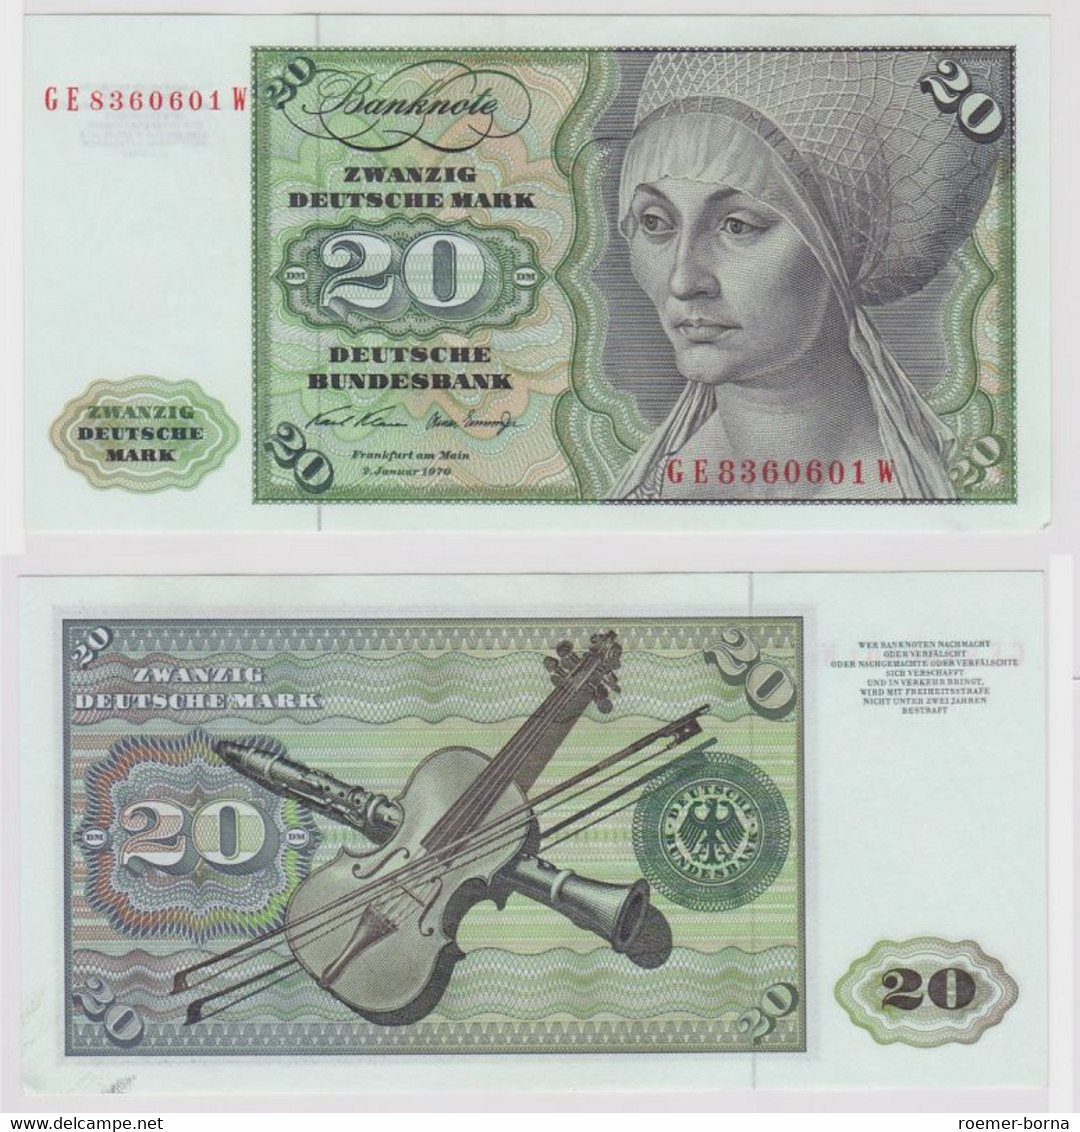 T148158 Banknote 20 DM Deutsche Mark Ro. 271b Schein 2.Jan. 1970 KN GE 8360601 W - 20 DM